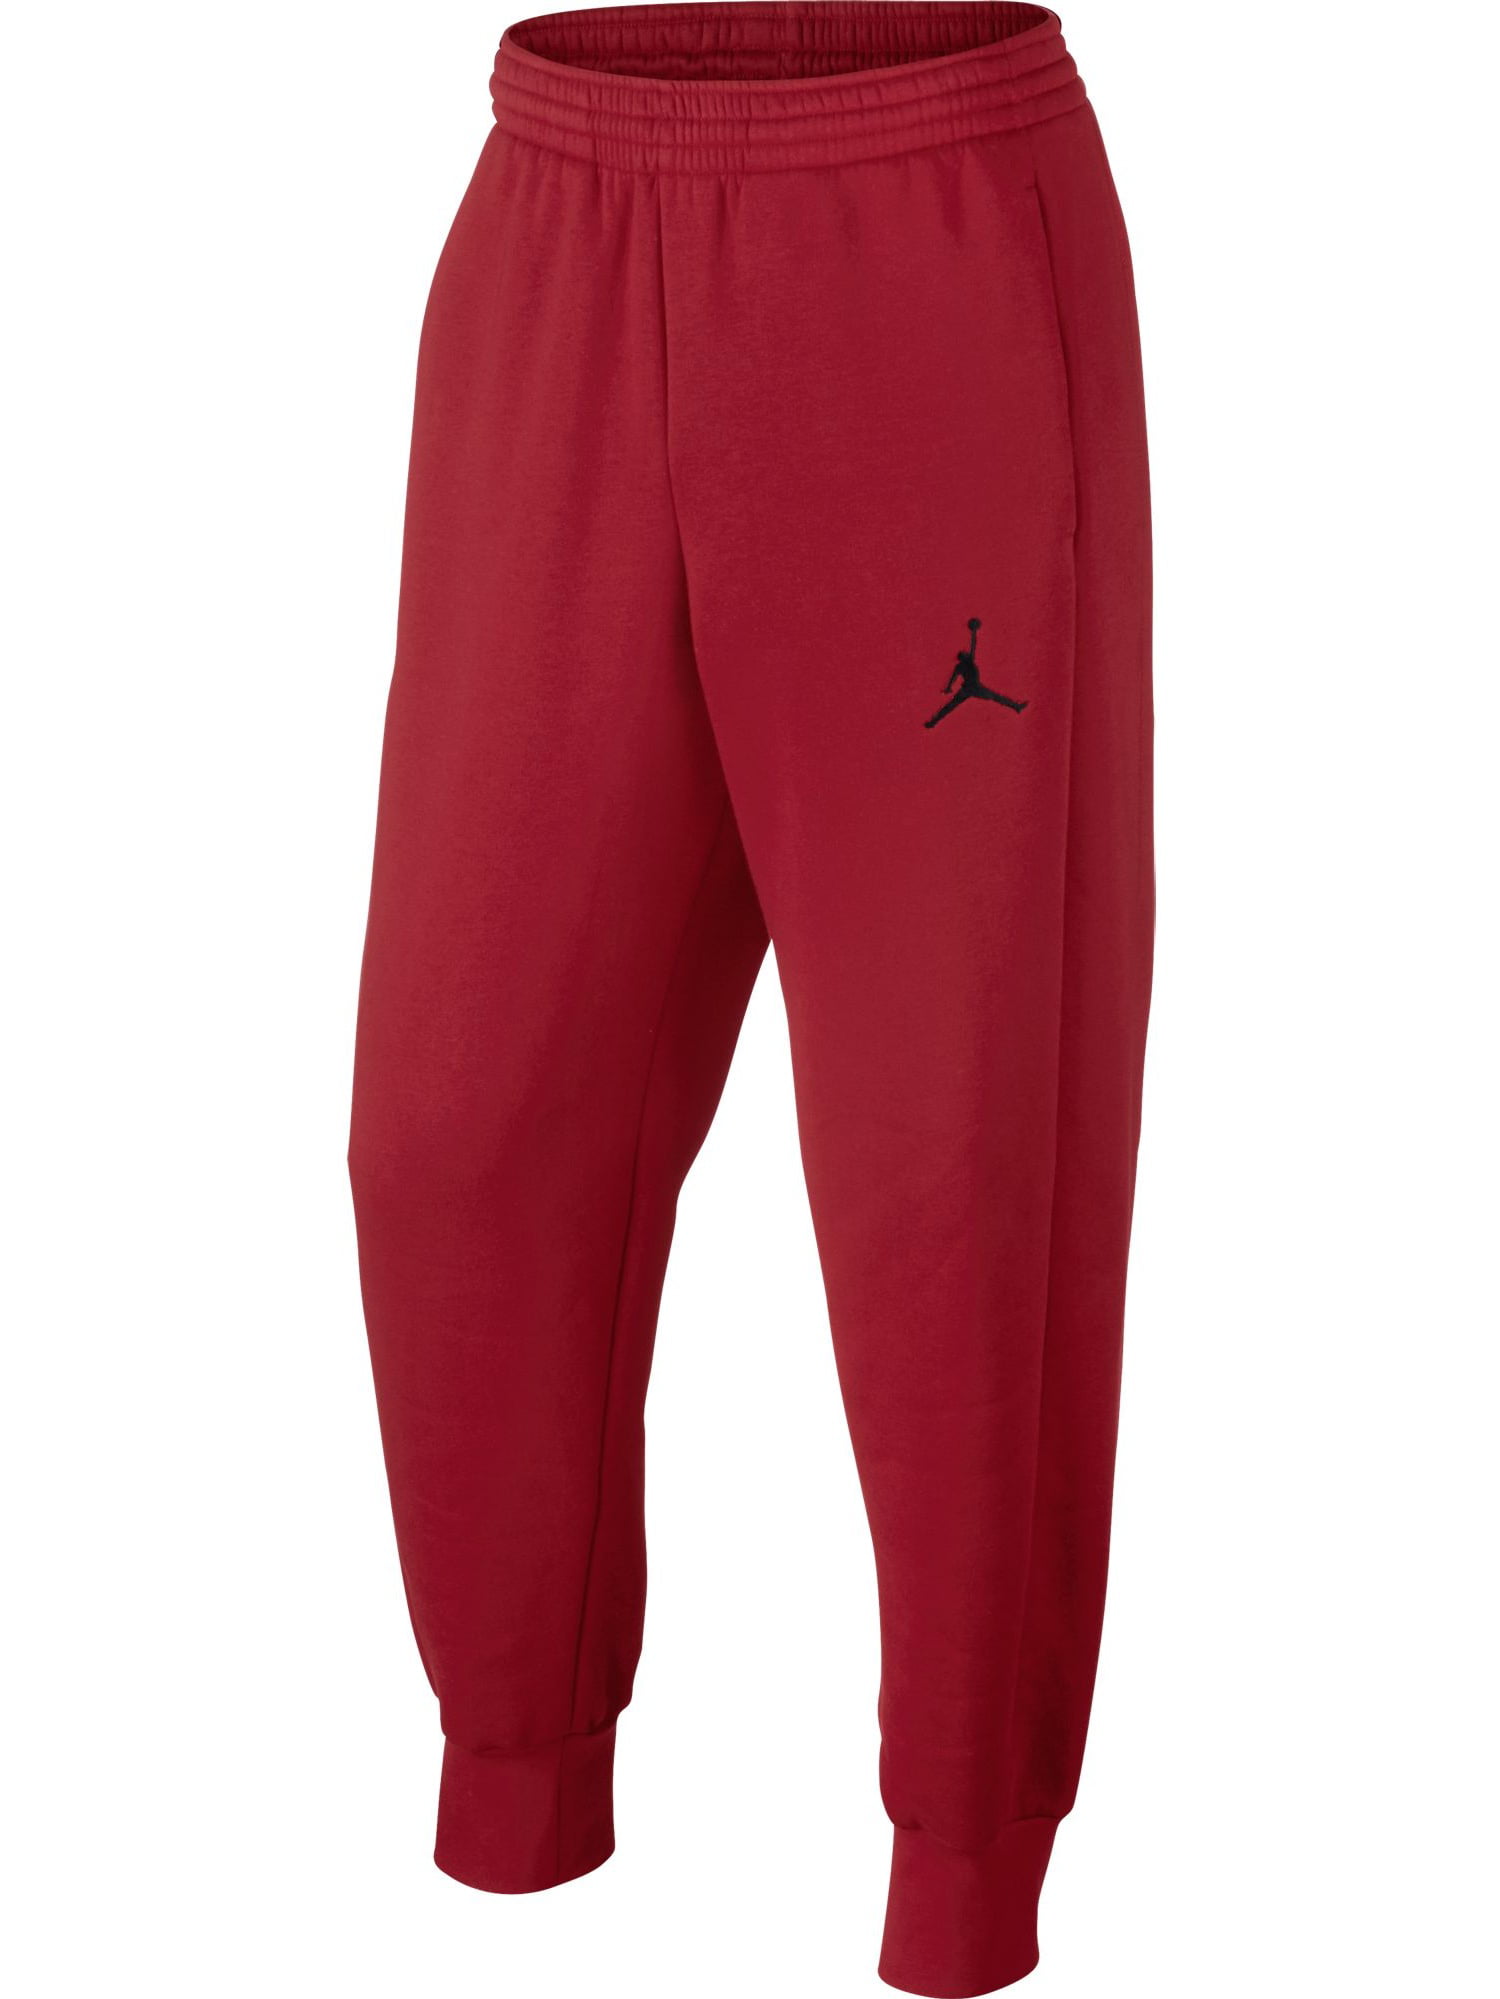 red and black jordan pants